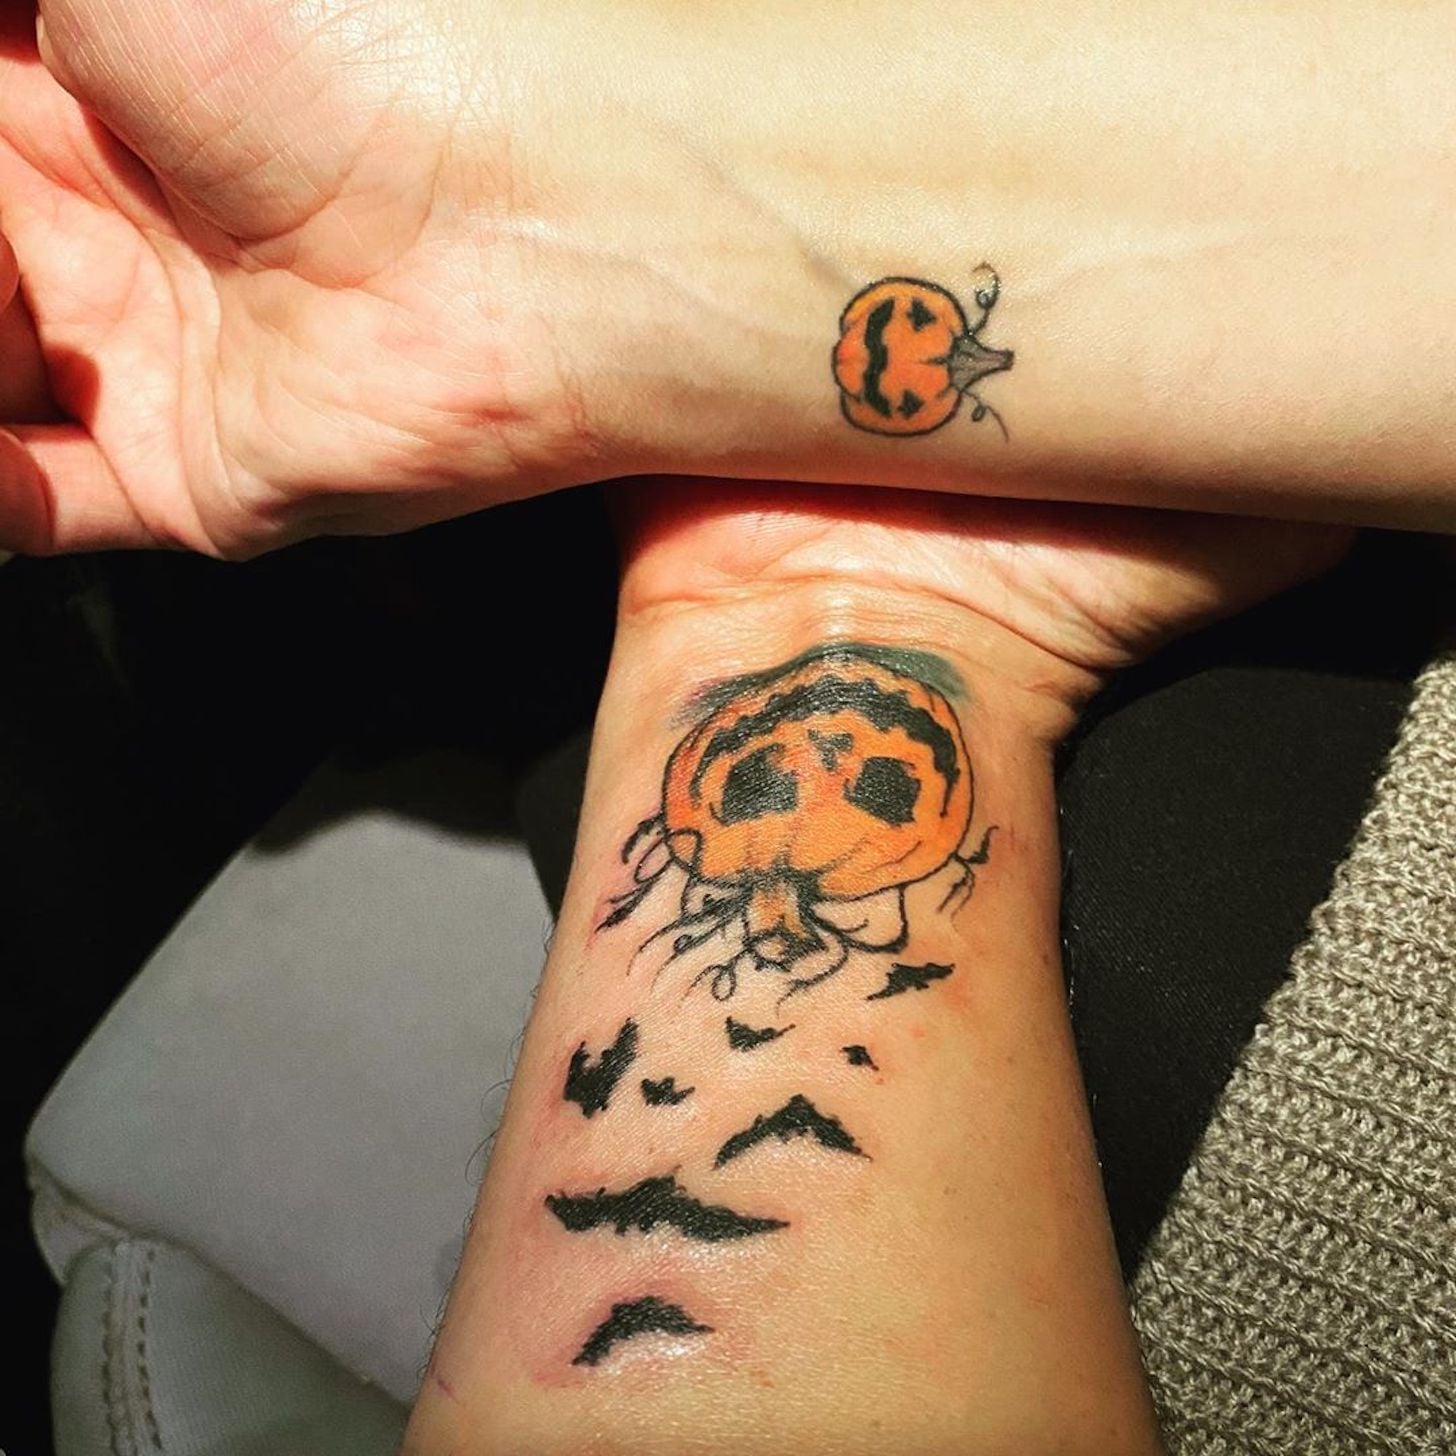 26 Eerily Creepy Tattoos